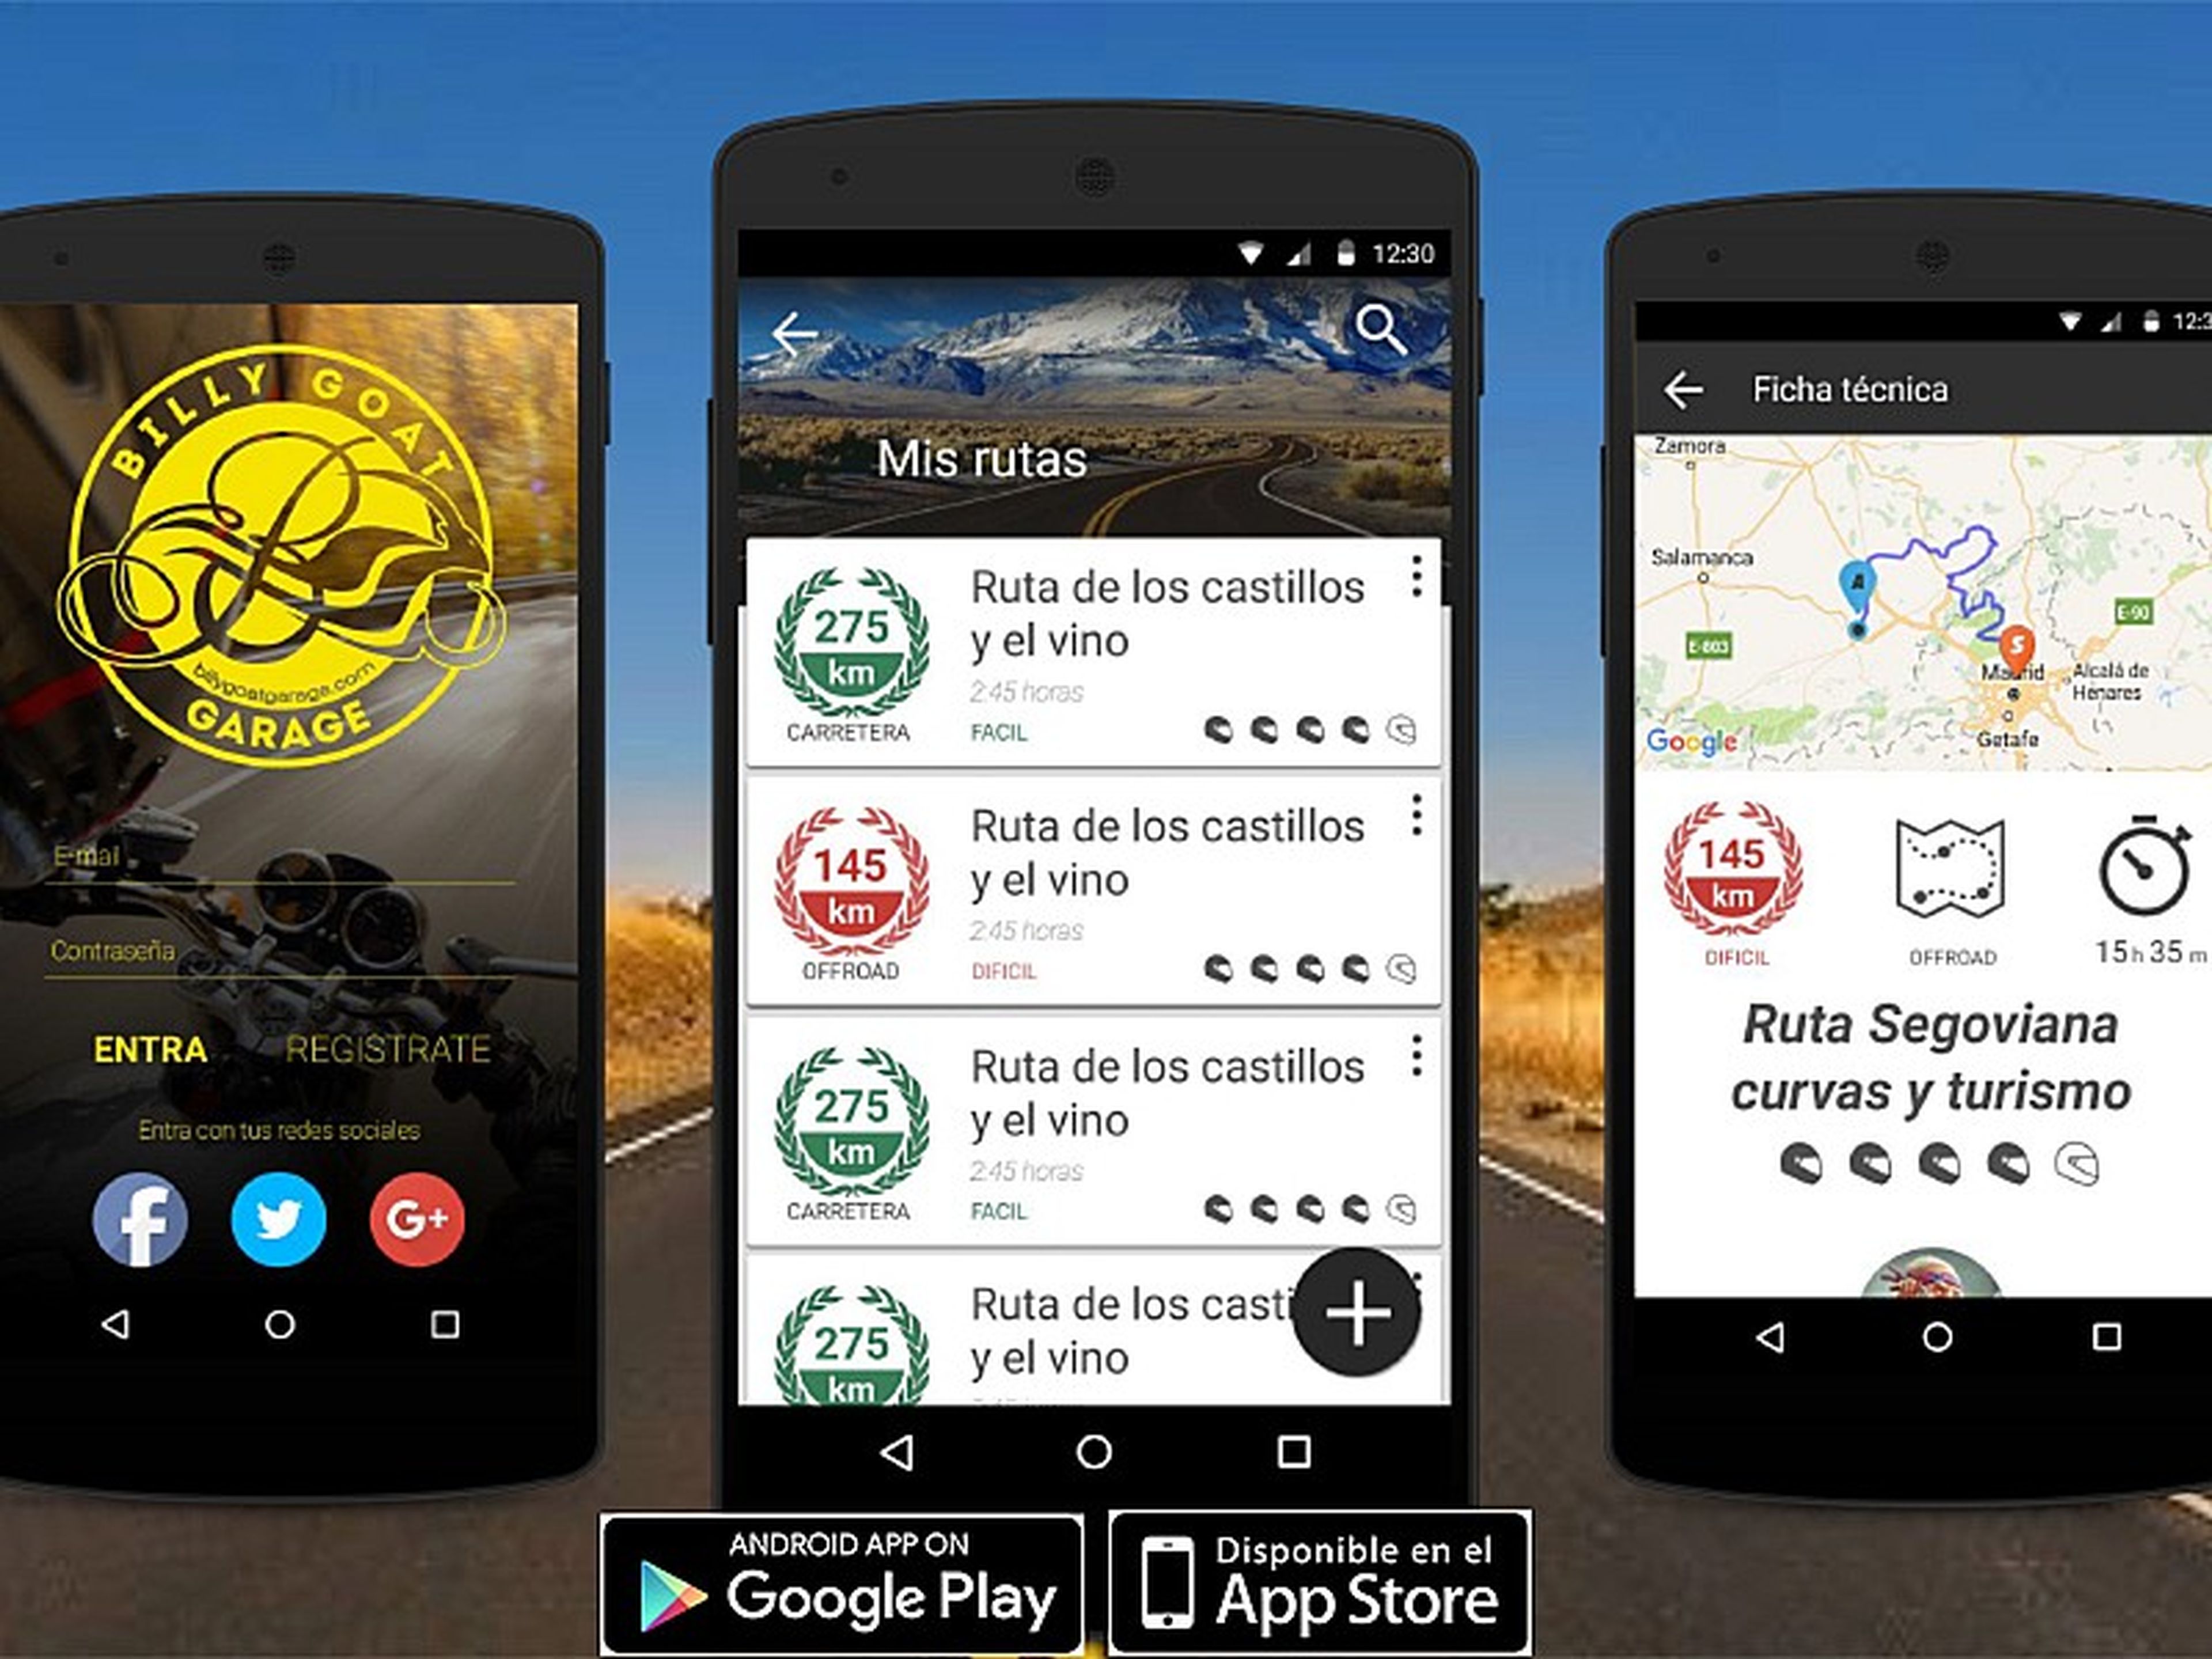 Billy Goat Garage: nueva app que premia tus rutas en moto